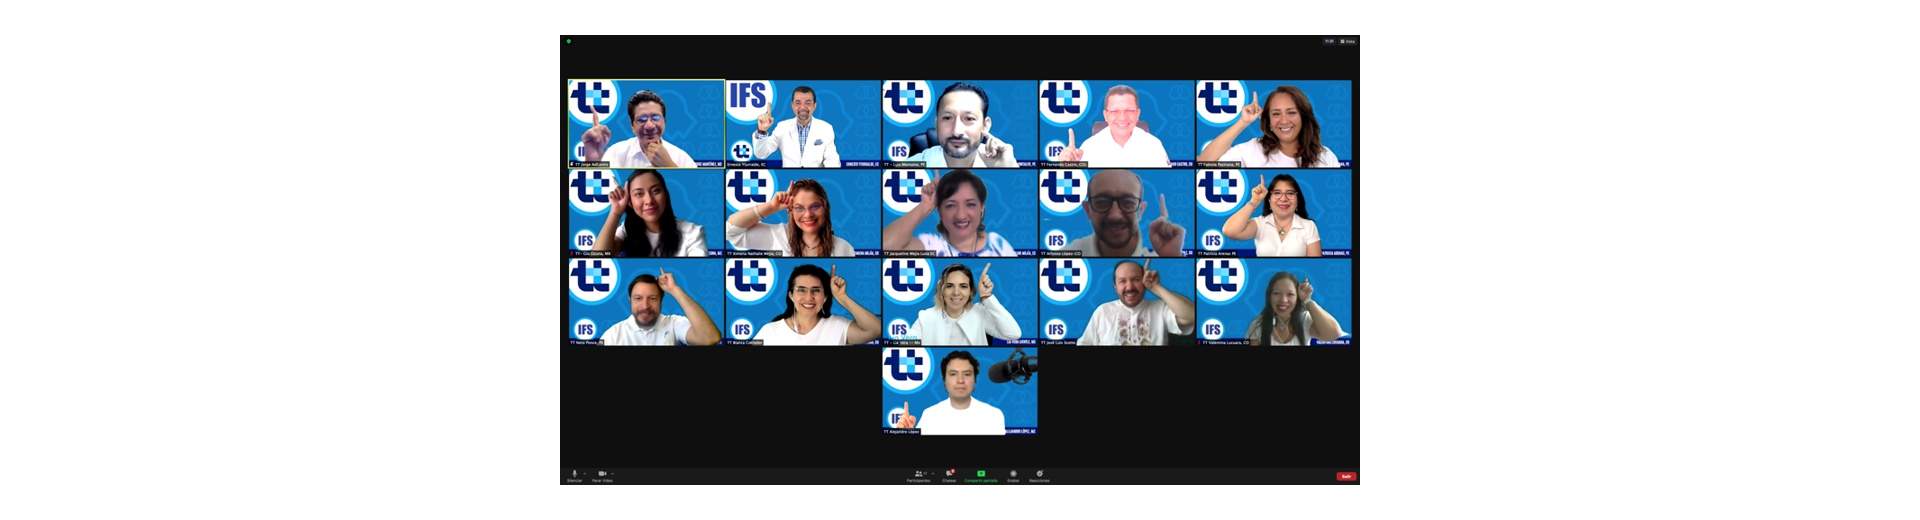 IFS TurboTeam de la Sociedad Internacional de Facilitadores | Aprendizaje Experiencial